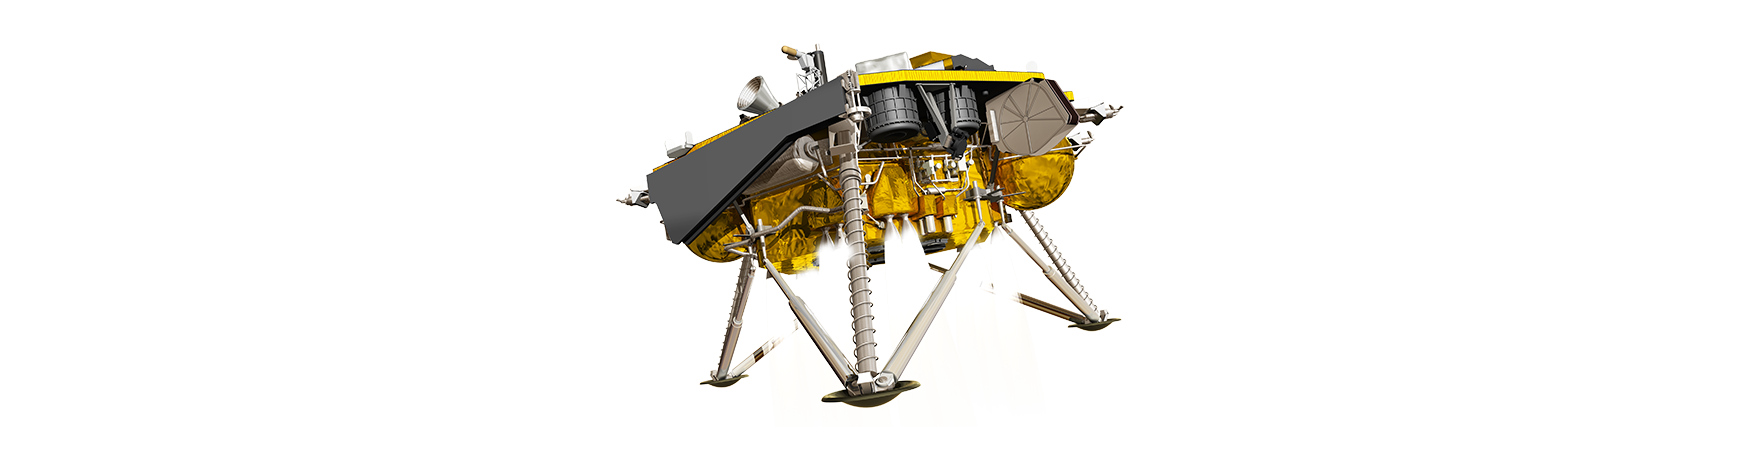 parachute clipart lander